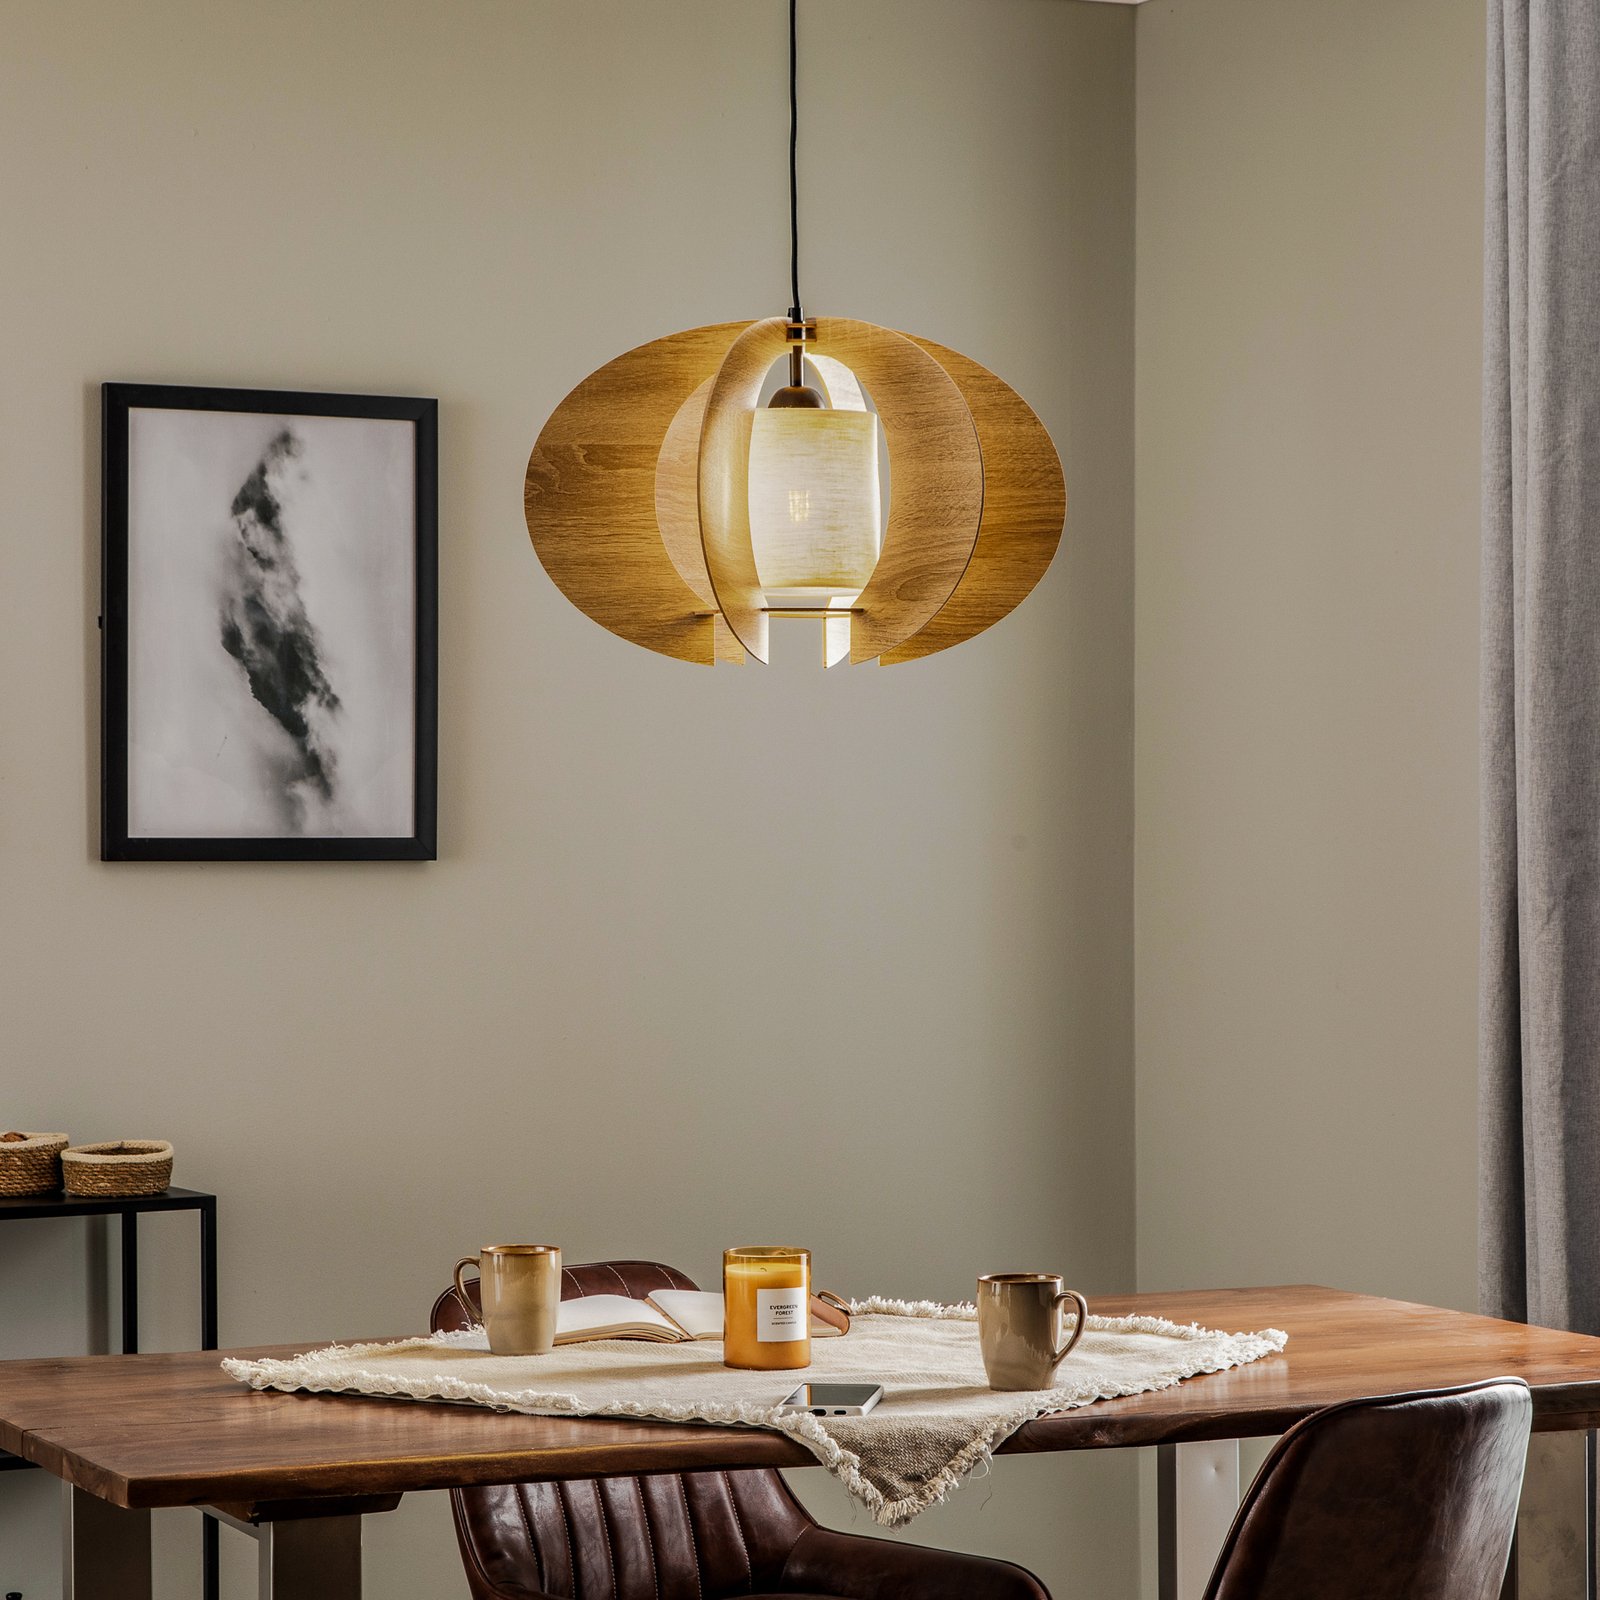 Lampa wisząca Modern C drewniane listwy, Ø 50 cm